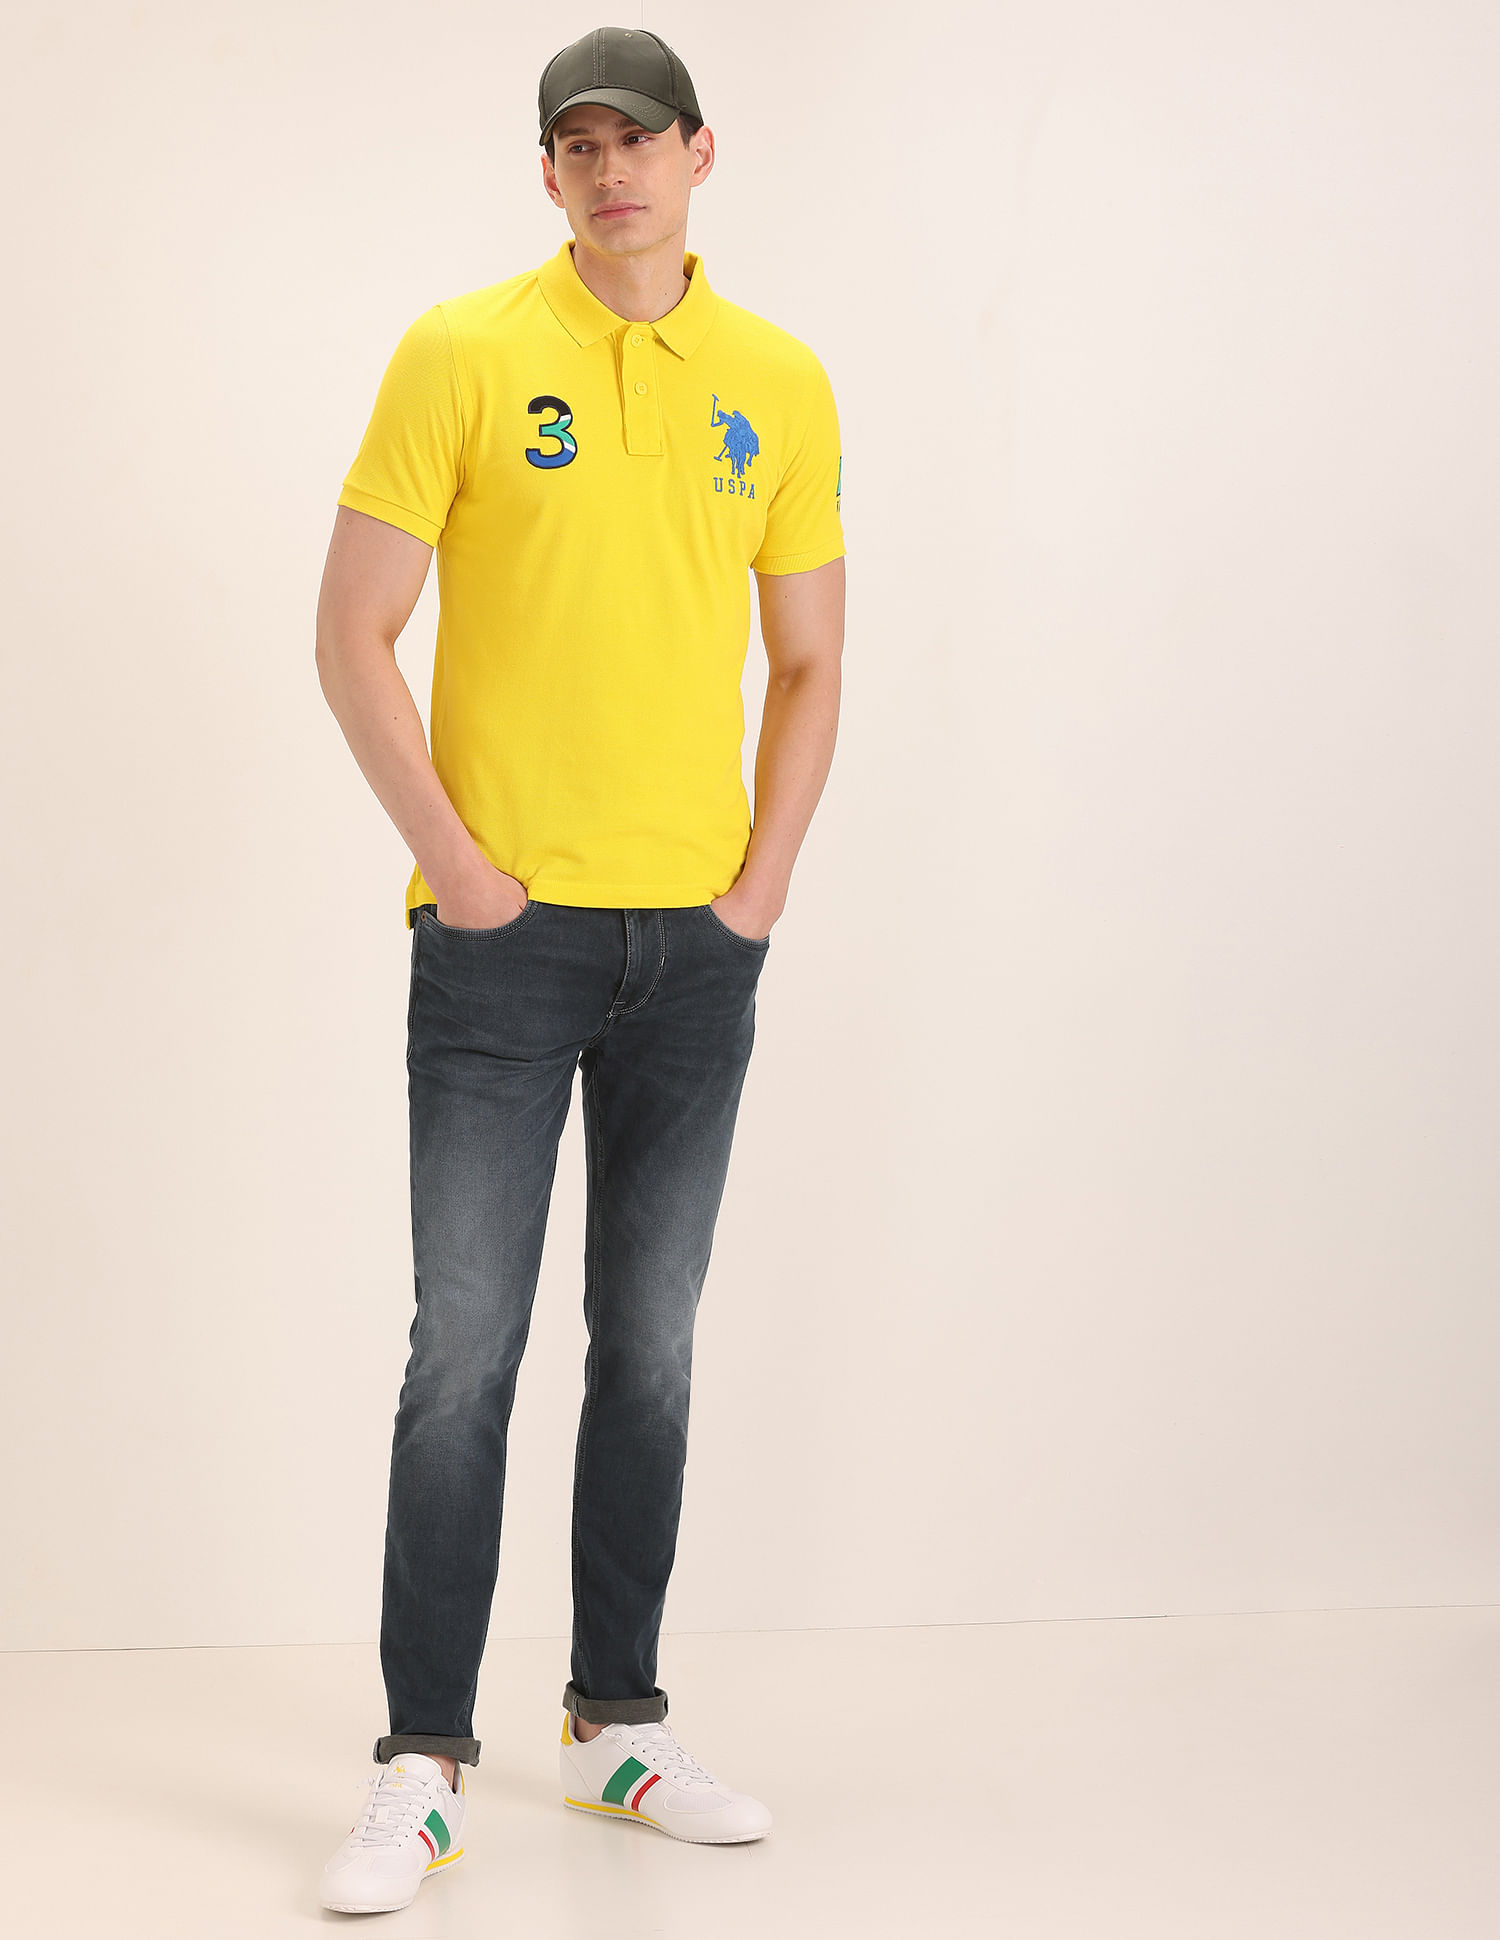 Buy U.S. Polo Assn. Brazil Flag Appliqued Pique Polo Shirt - NNNOW.com